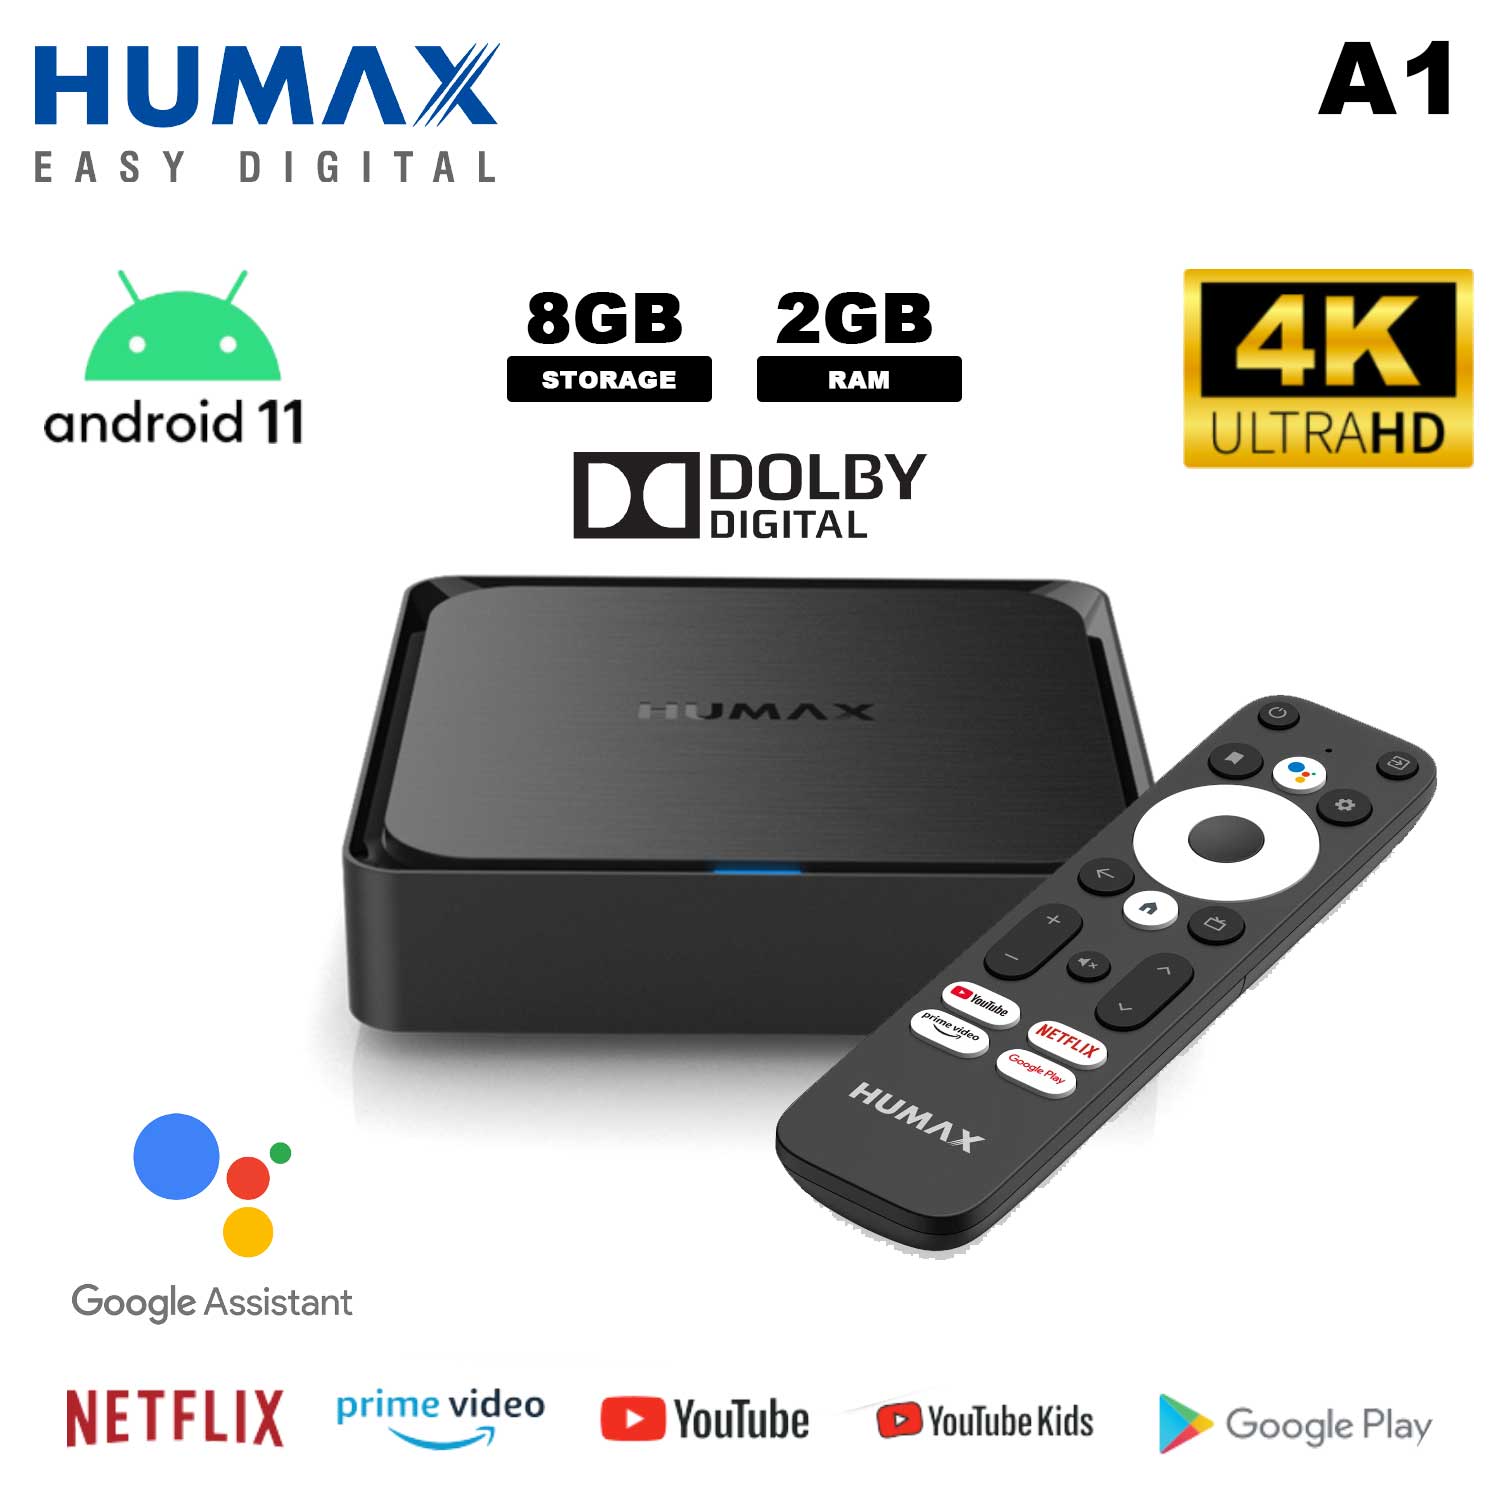 HUMAX A1 Android TV Box